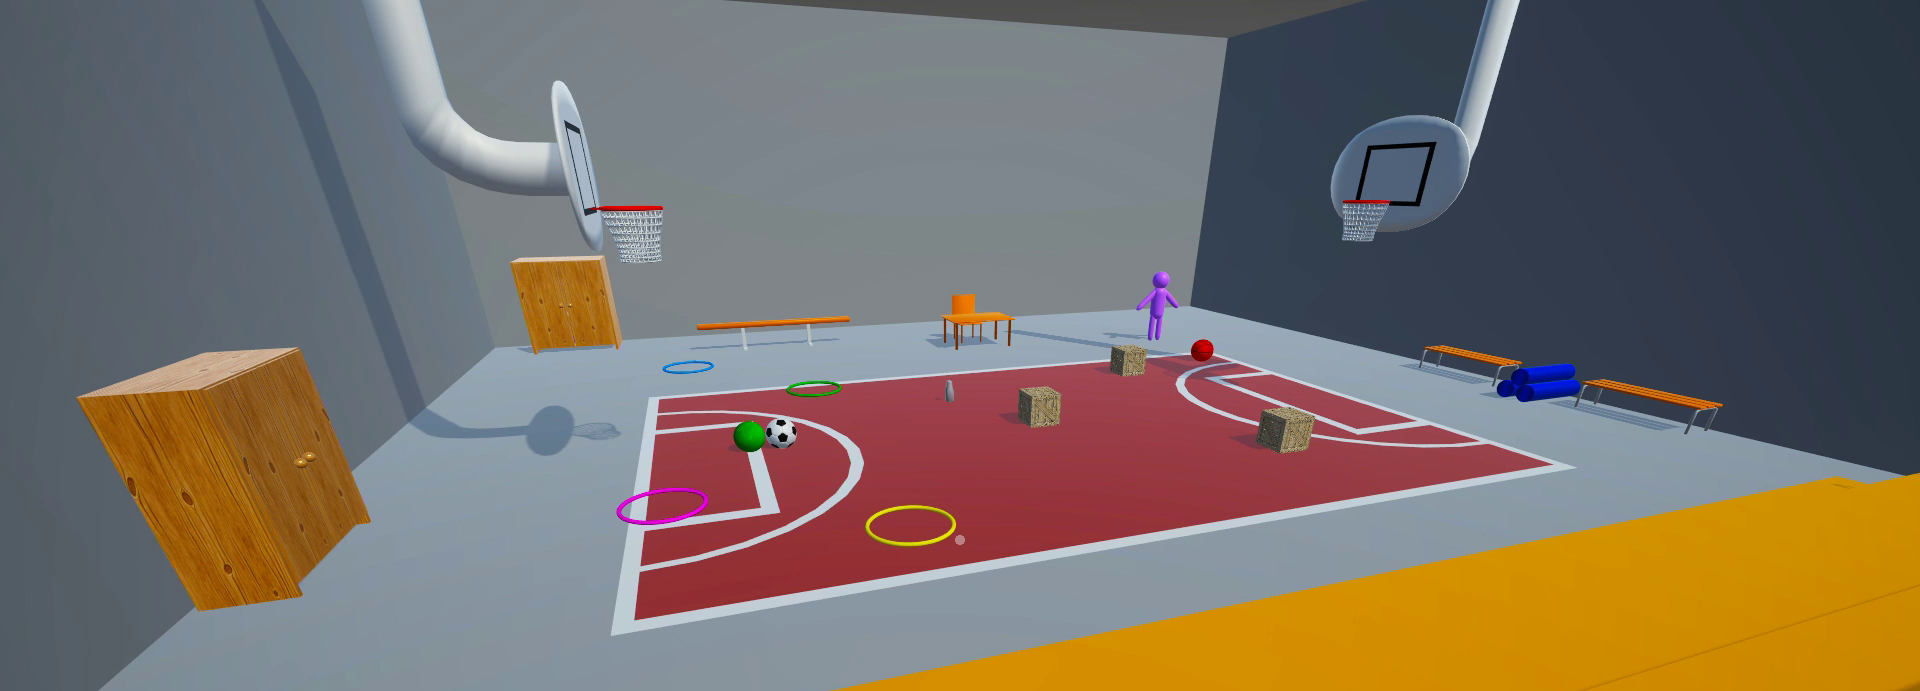 Capture d'écran du prototype Hemo-Game